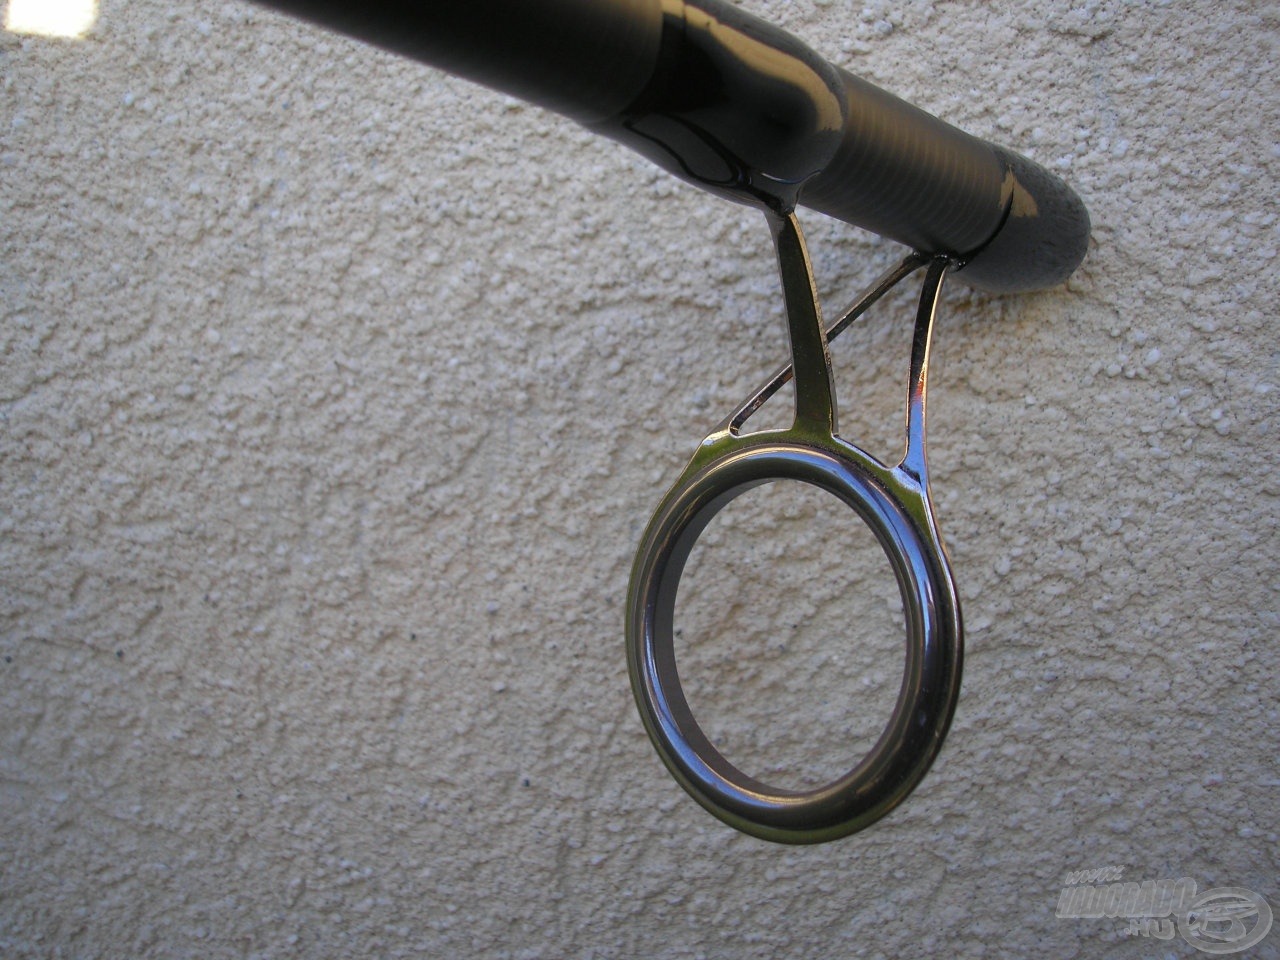 Tiszteletreméltó 39 mm-es belső átmérővel rendelkező keverőgyűrű, melyhez a boton található összes gyűrűt arányosan méretezték. Mondani sem kell, hogy ezeken a vastag monofil is szélsebesen „folyik” át